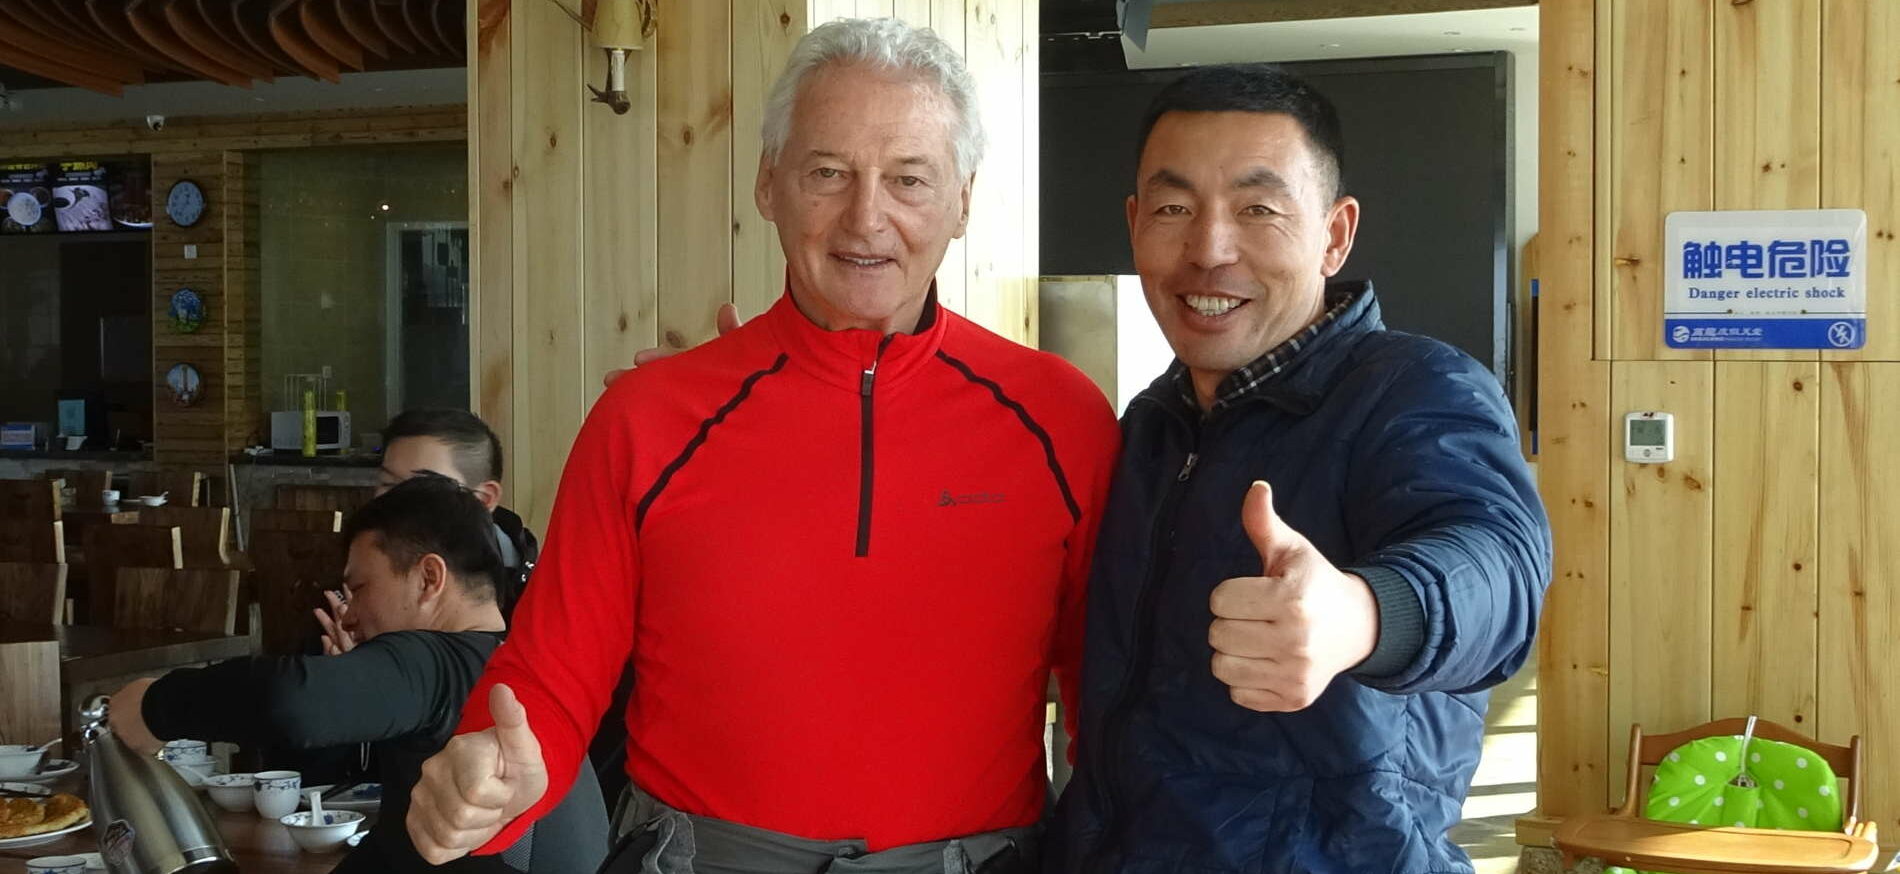 Wolfgang Preisinger ist seit 20 Jahren beruflich in China aktiv. Derzeit überwacht er als Supervisor im Auftrag des Salzburger Skiverbandes die Skilehrer-Ausbildung im Land des Lächelns.